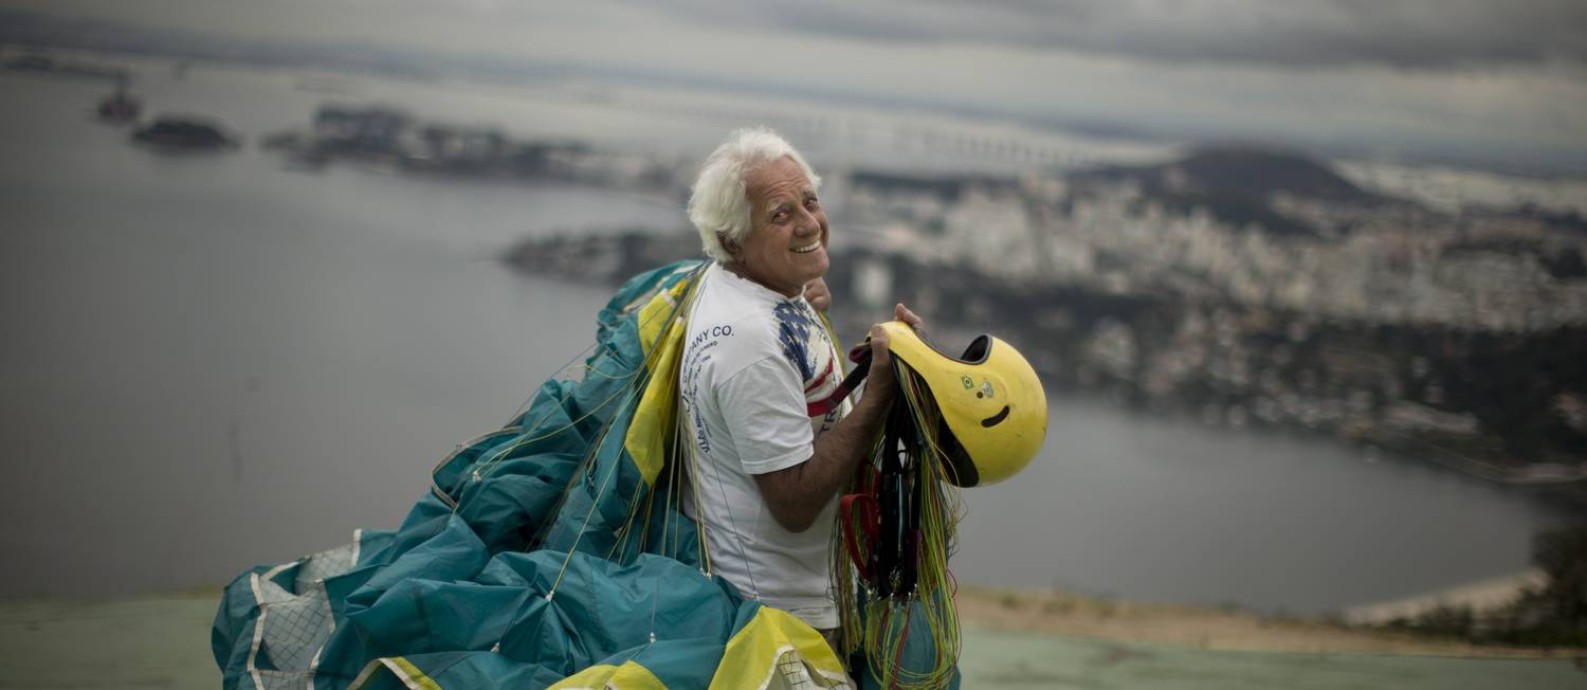 
Moacyr Rocha Filho, de 84 anos, com o parapente onde costuma saltar, no Parque da Cidade, Niterói
Foto:
Márcia Foletto
/
Agência O Globo
